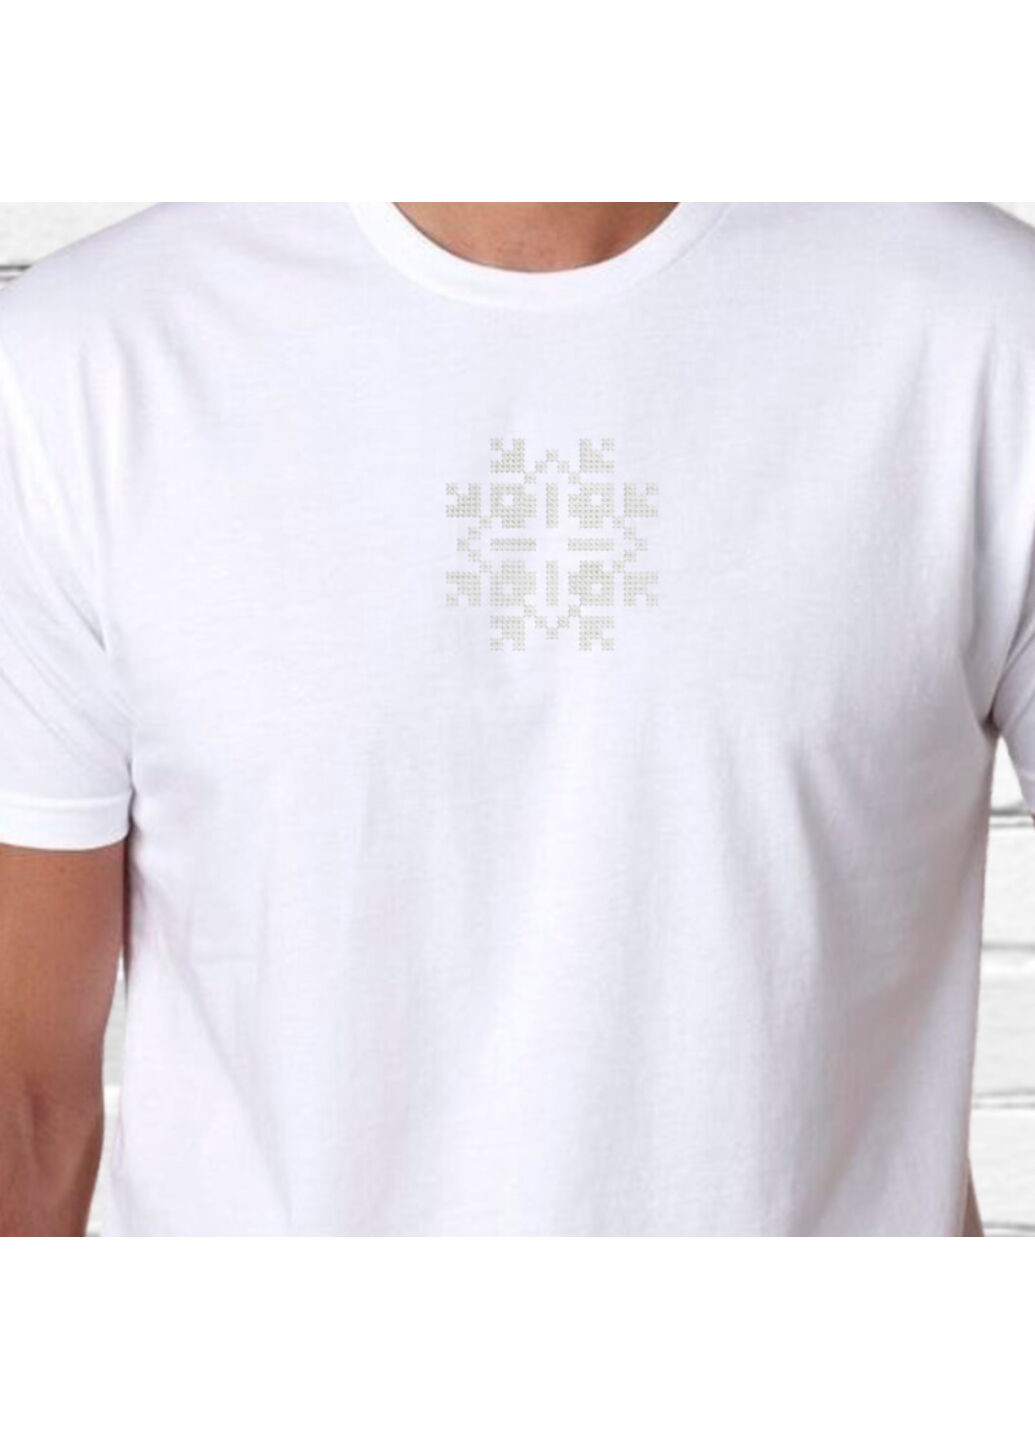 Біла футболка етно з вишивкою 01-22 чоловіча білий m No Brand